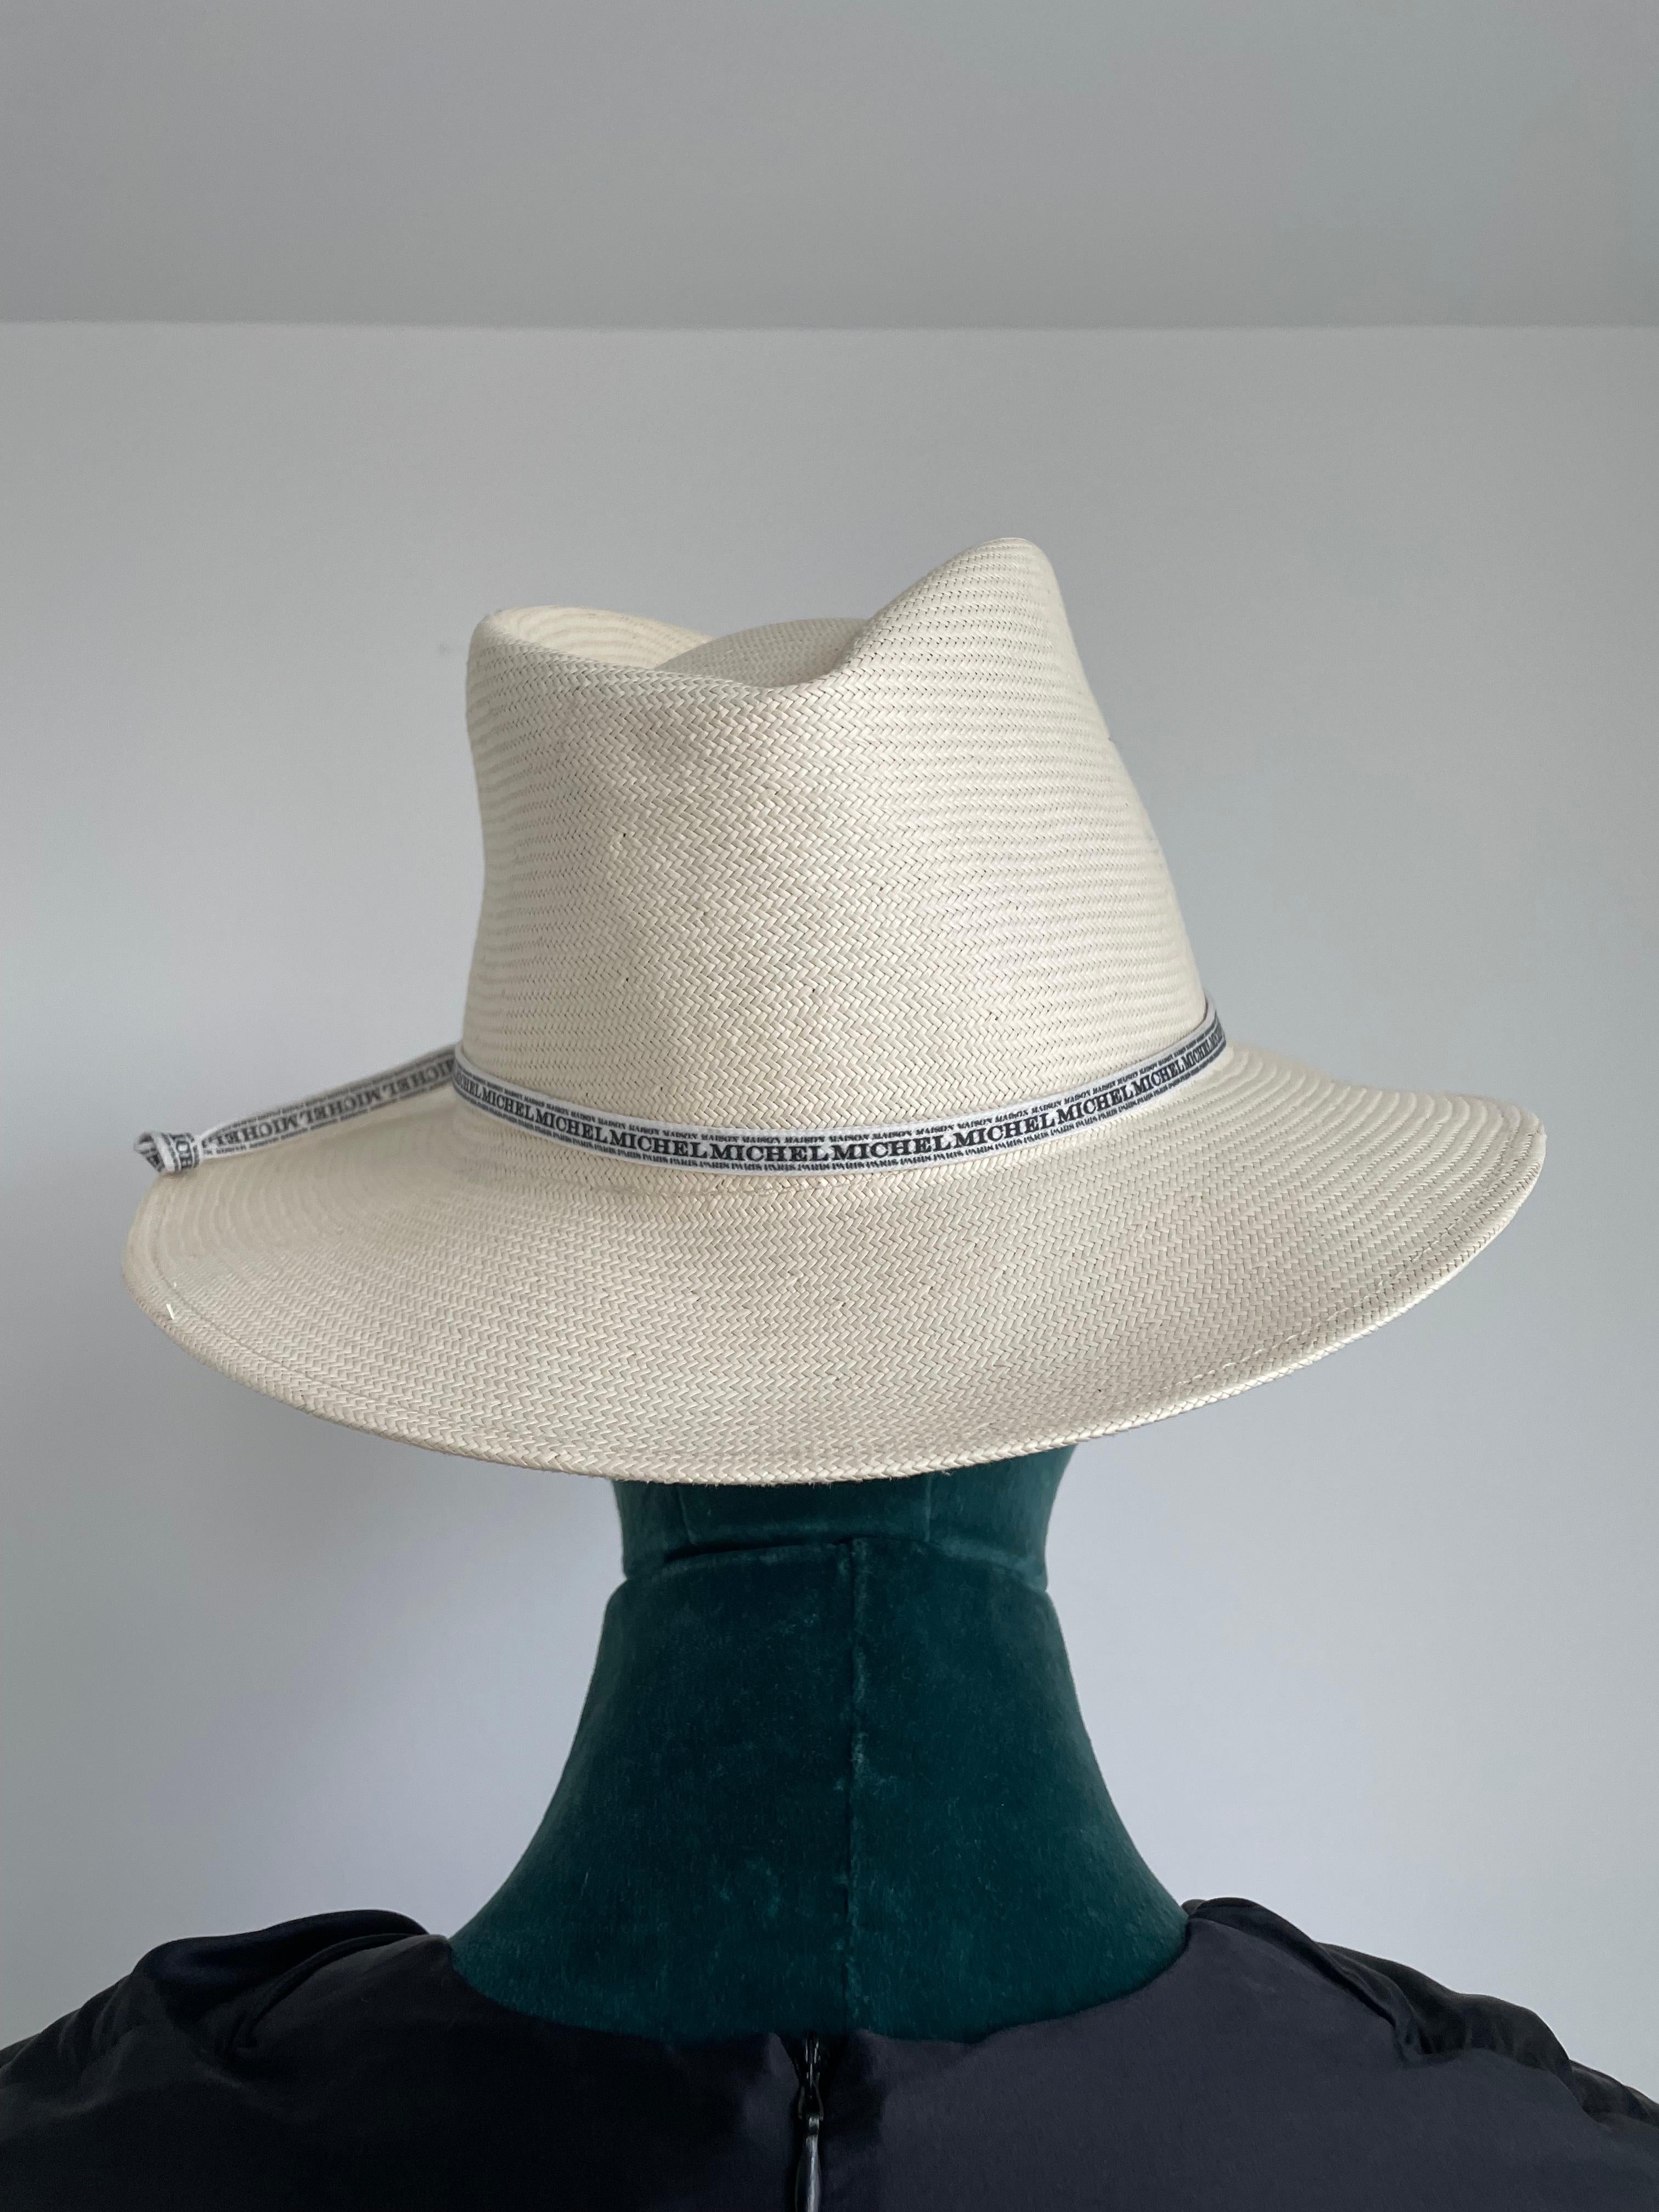 Design/One :
Le chapeau Fedora enroulable de la Maison Michel André est conçu pour allier sans effort mode et fonctionnalité. La silhouette intemporelle du fedora, avec sa couronne pincée et son bord légèrement rabattu, respire la sophistication et